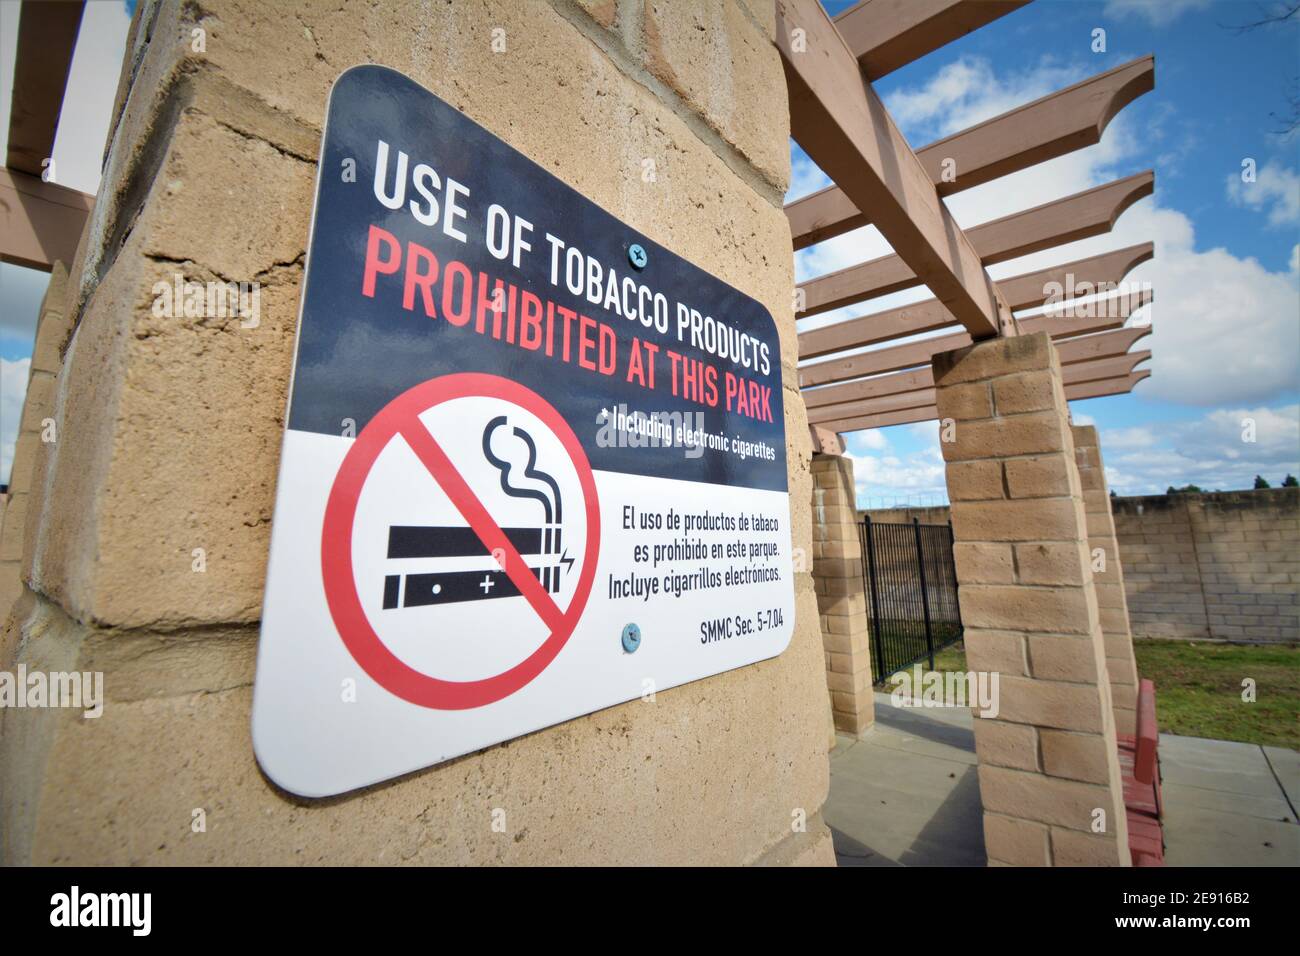 Rauchverbot auf dem öffentlichen Gebäude in Englisch und Spanisch Mit Abbildung Stockfoto